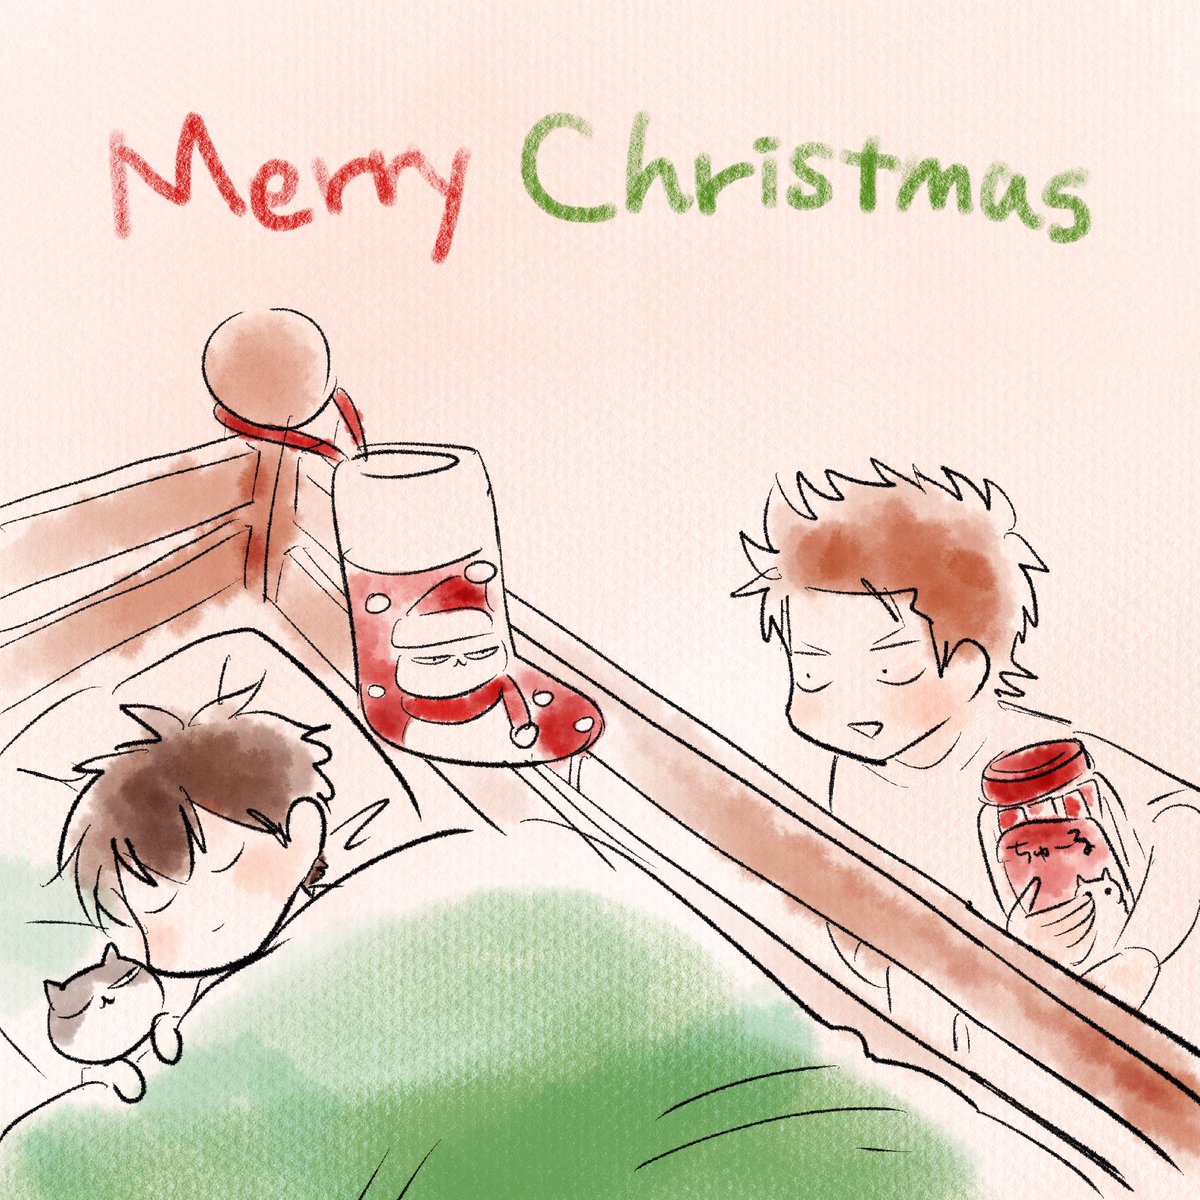 「Merry Christmas 」|岡田有希/おかだゆき🛀のイラスト